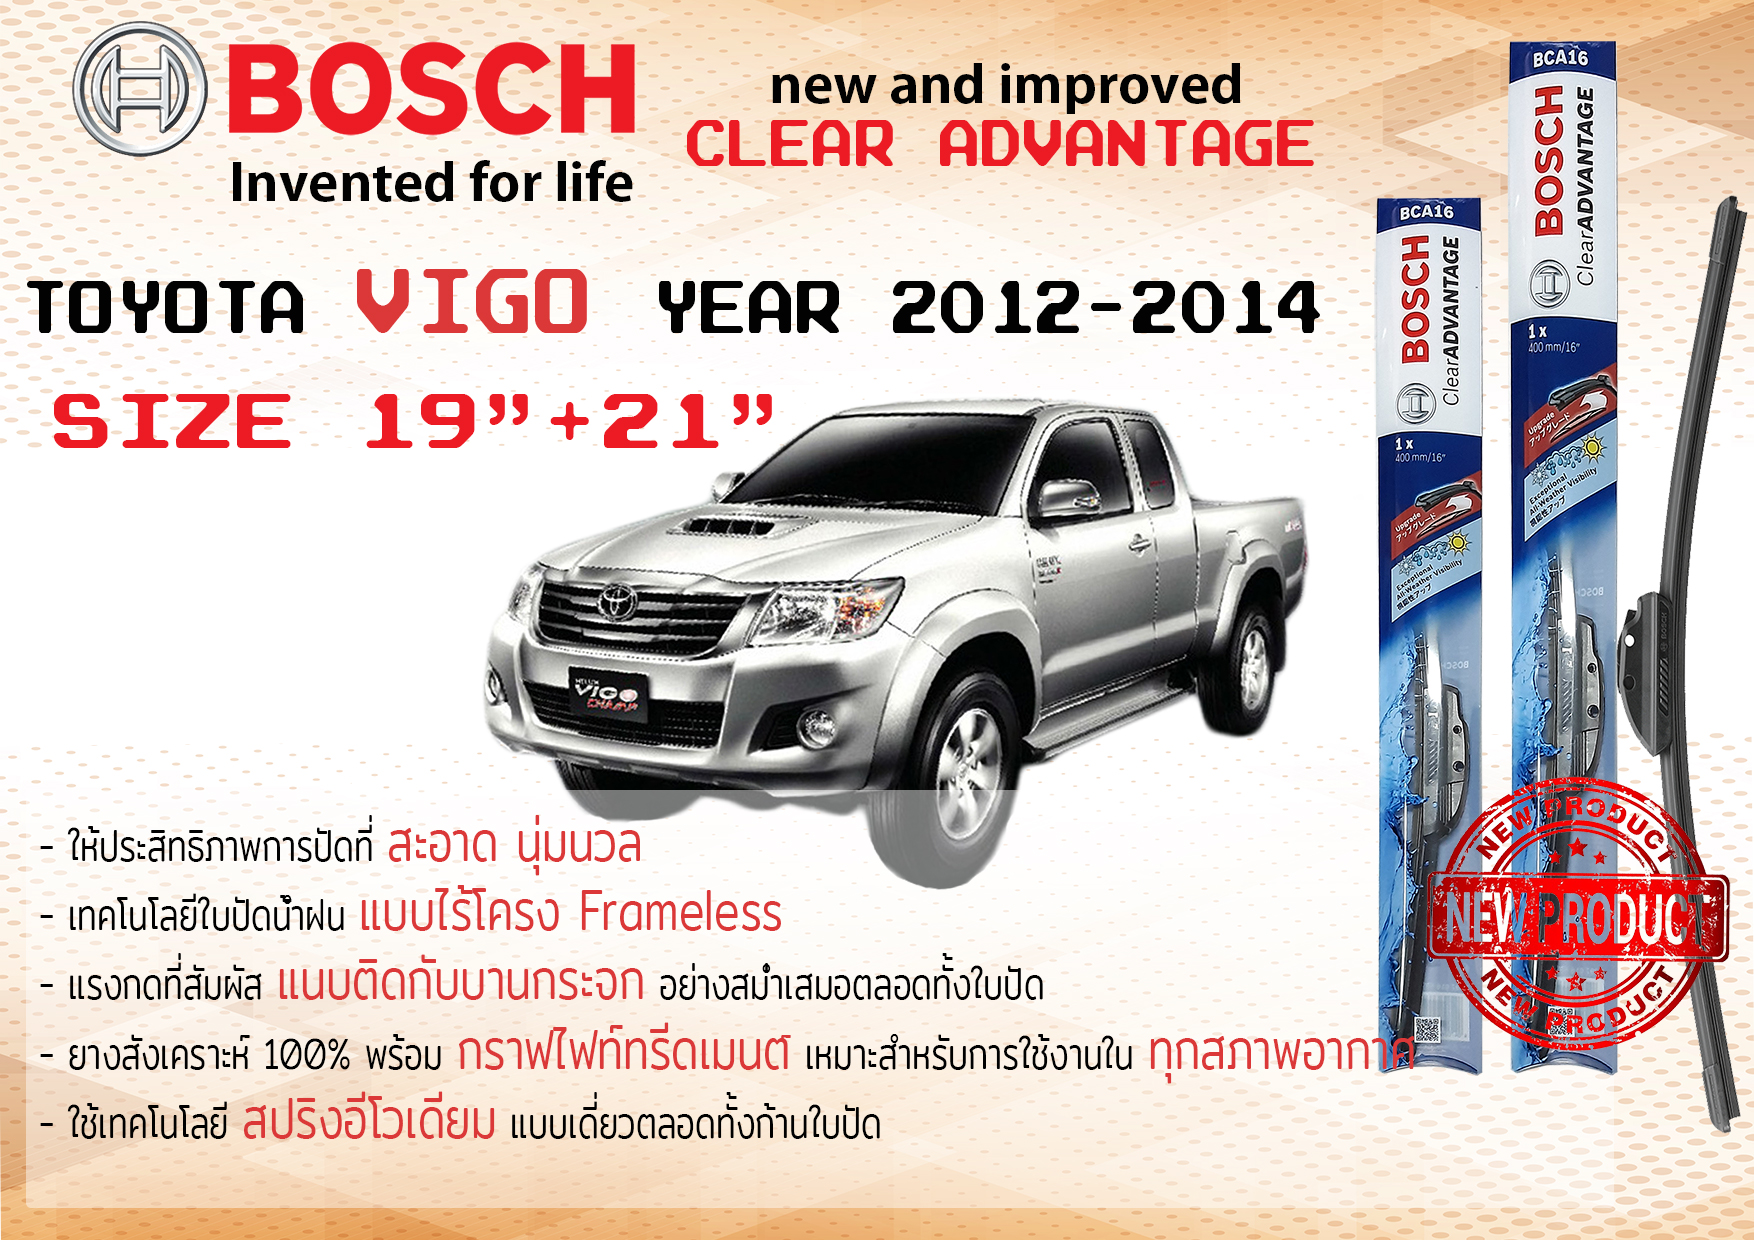 ใบปัดน้ำฝน คู่หน้า Bosch Clear Advantage frameless ก้านอ่อน ขนาด 19”+21” สำหรับรถ Toyota Vigo champ ปี 2012-2014 ปี 12,13,14, โตโยต้า โตโยตา วีโก้ วีโก แชมป์ ทนแสง UV